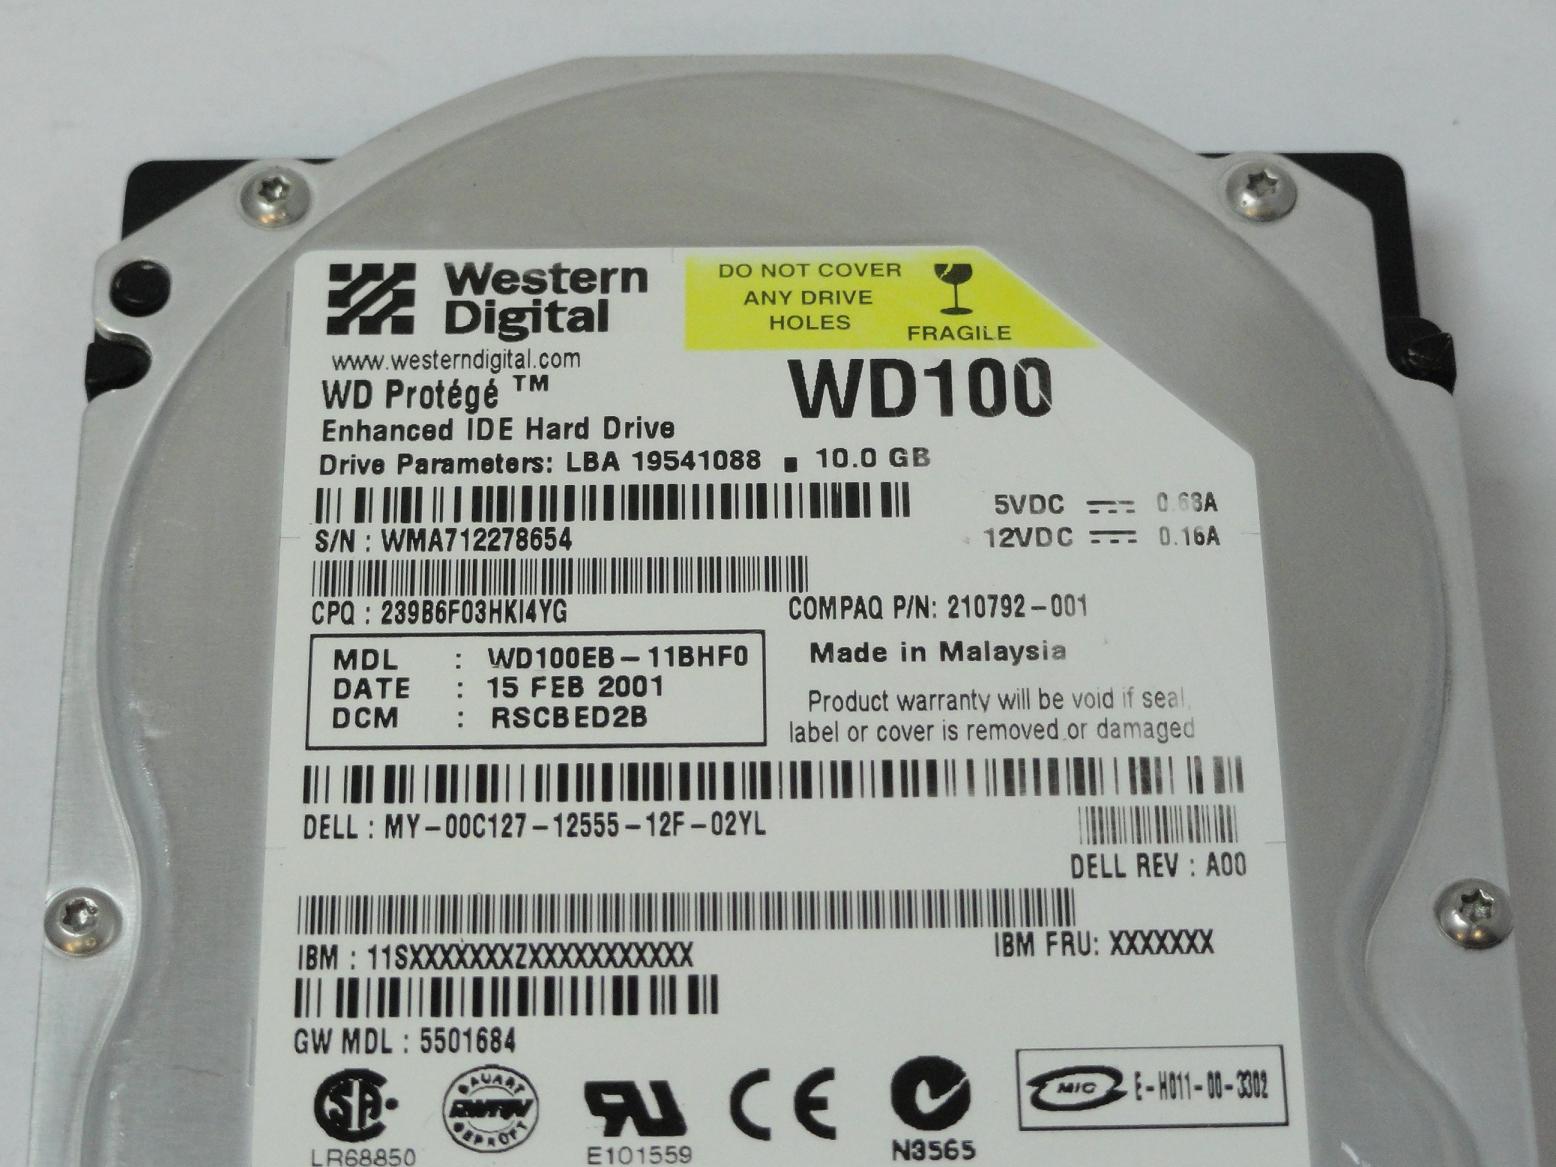 PR00816_WD100EB-11BHF0_HP/Western Digital 10GB 3.5" 5400rpm IDE HDD (Unte - Image2